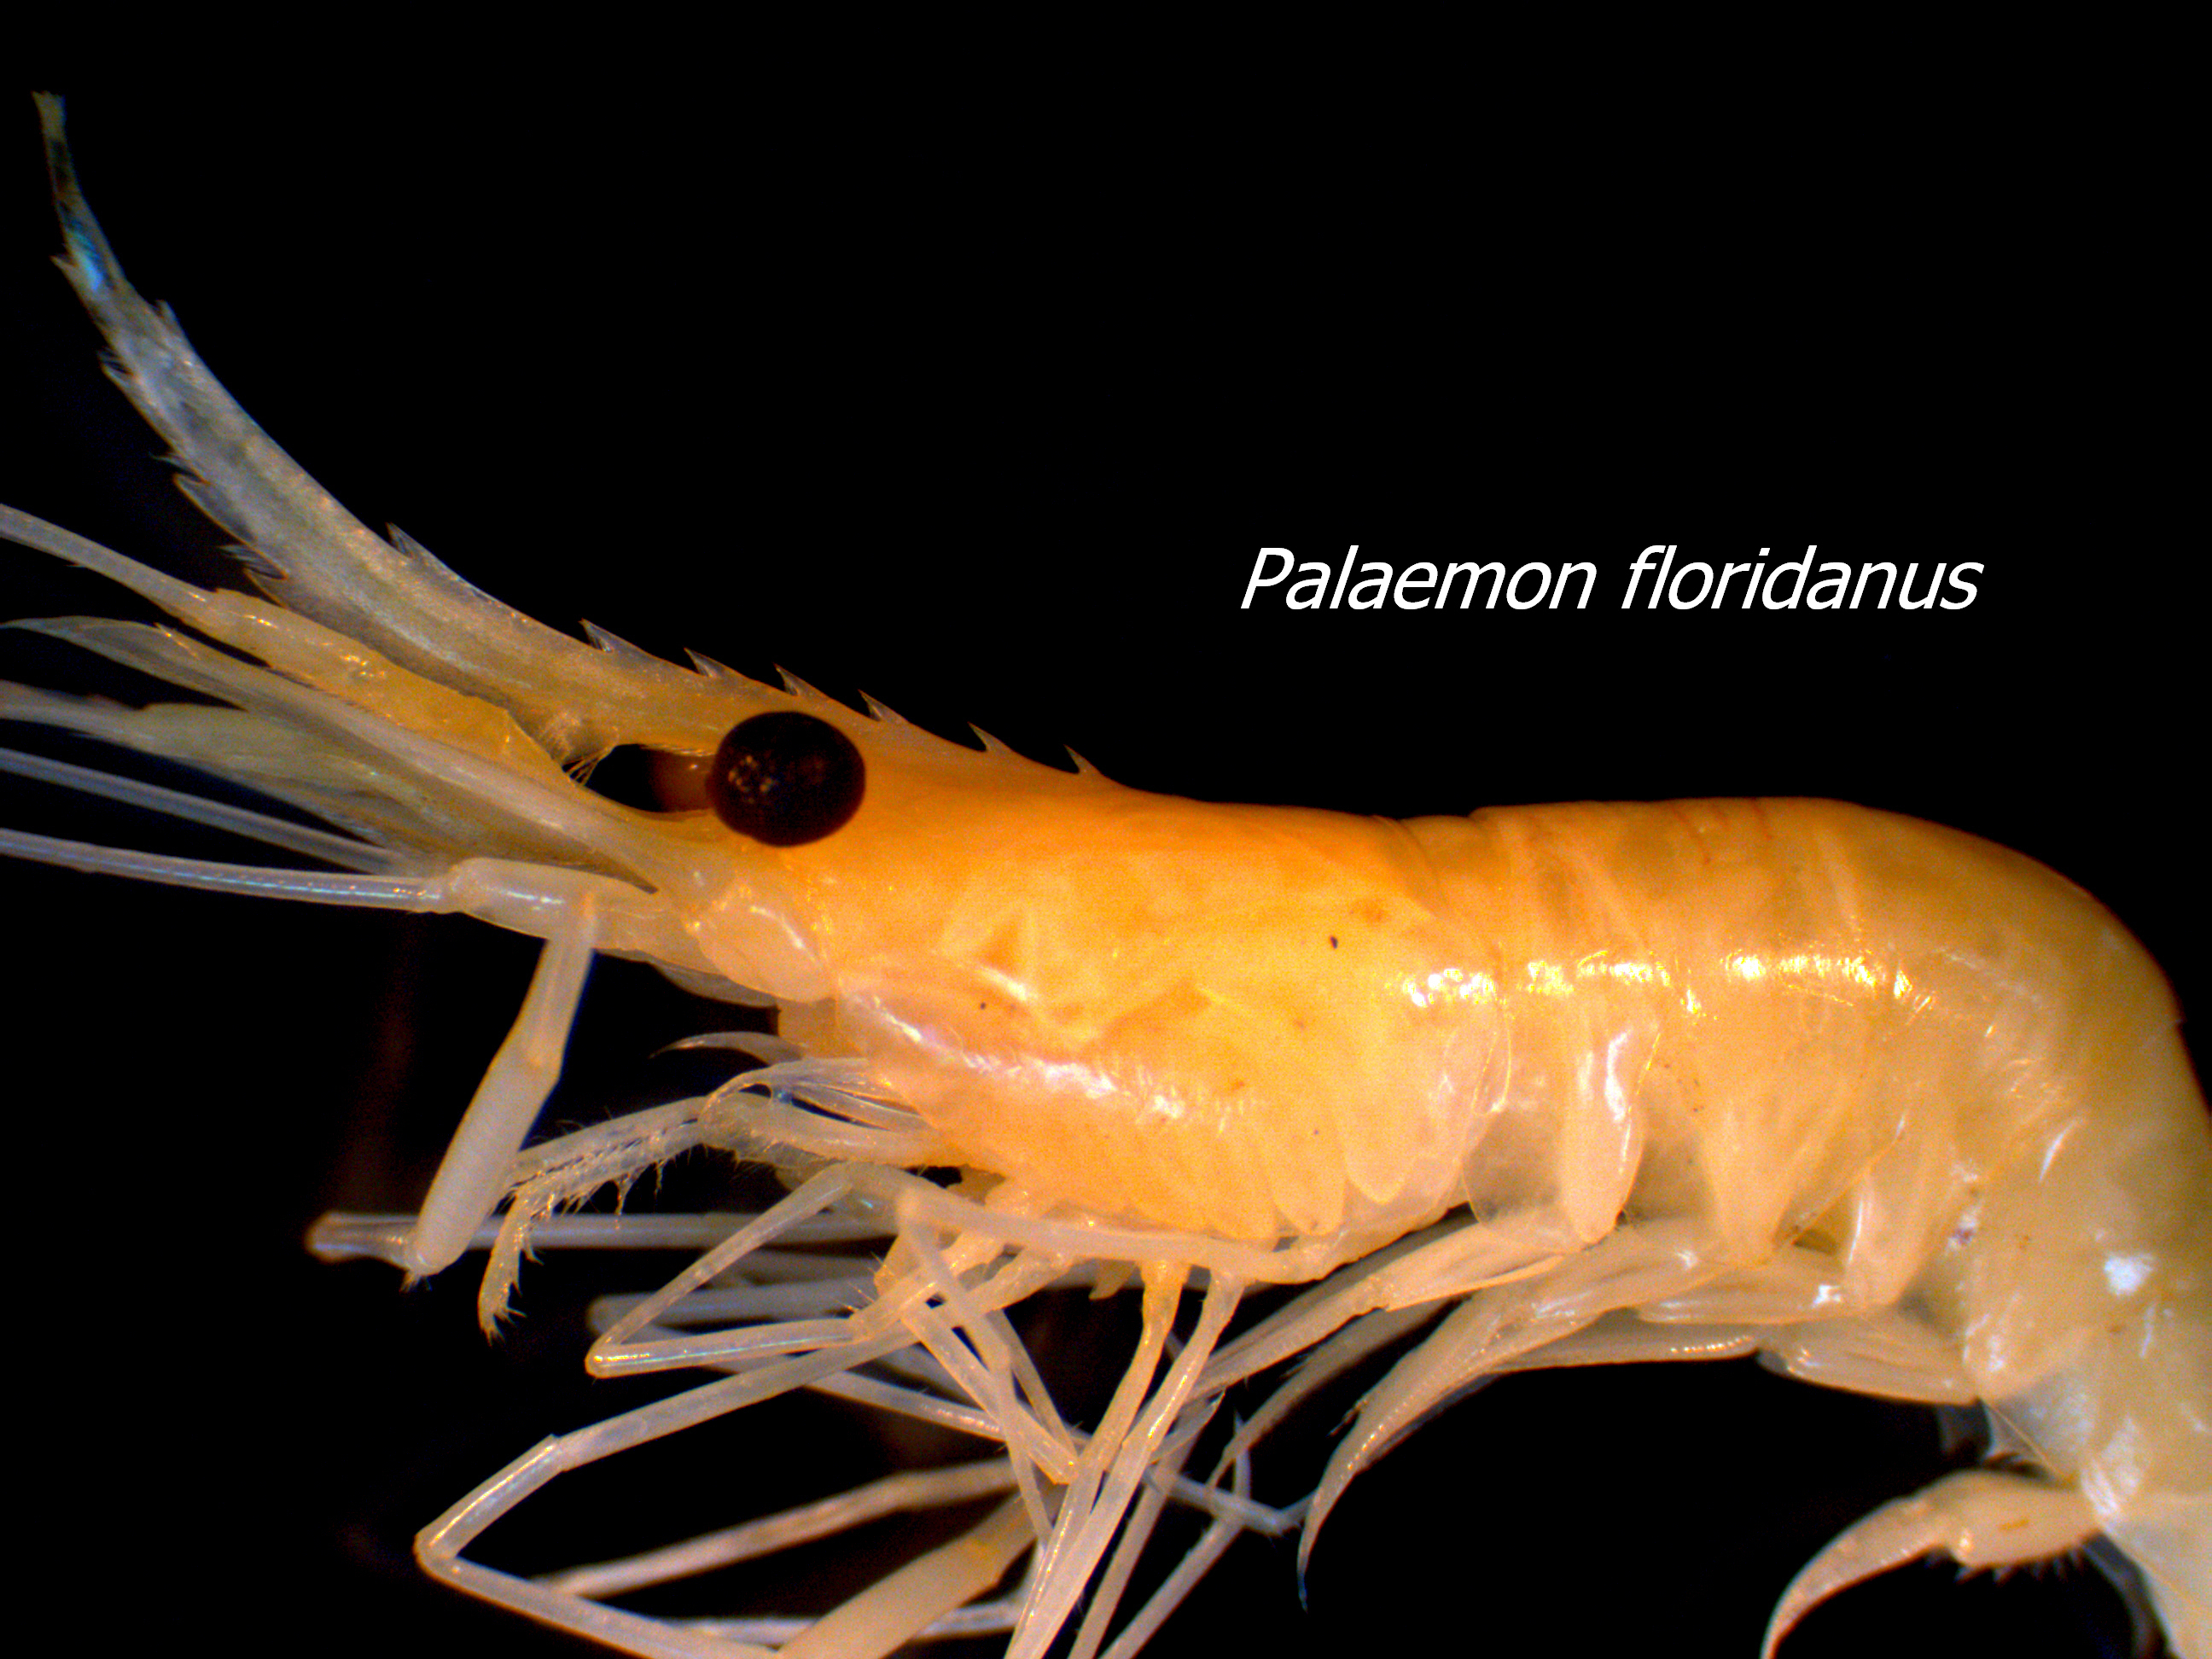 Palaemonetes floridanus (Palaemonid shrimp)